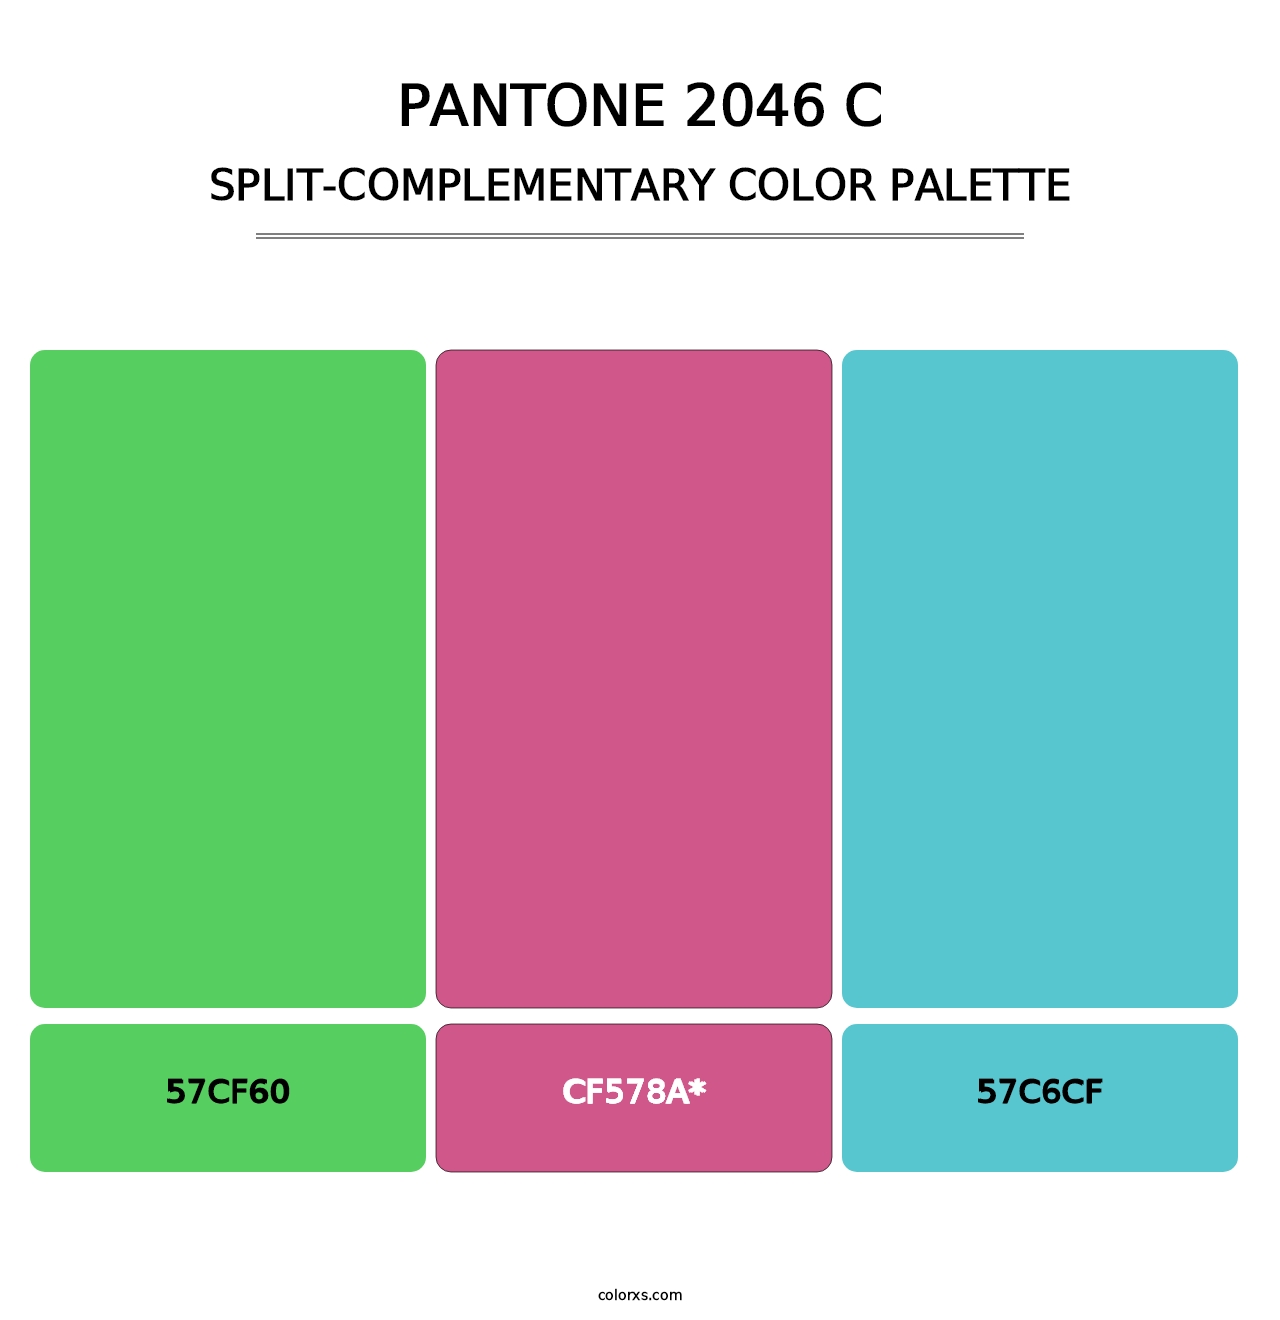 PANTONE 2046 C - Split-Complementary Color Palette